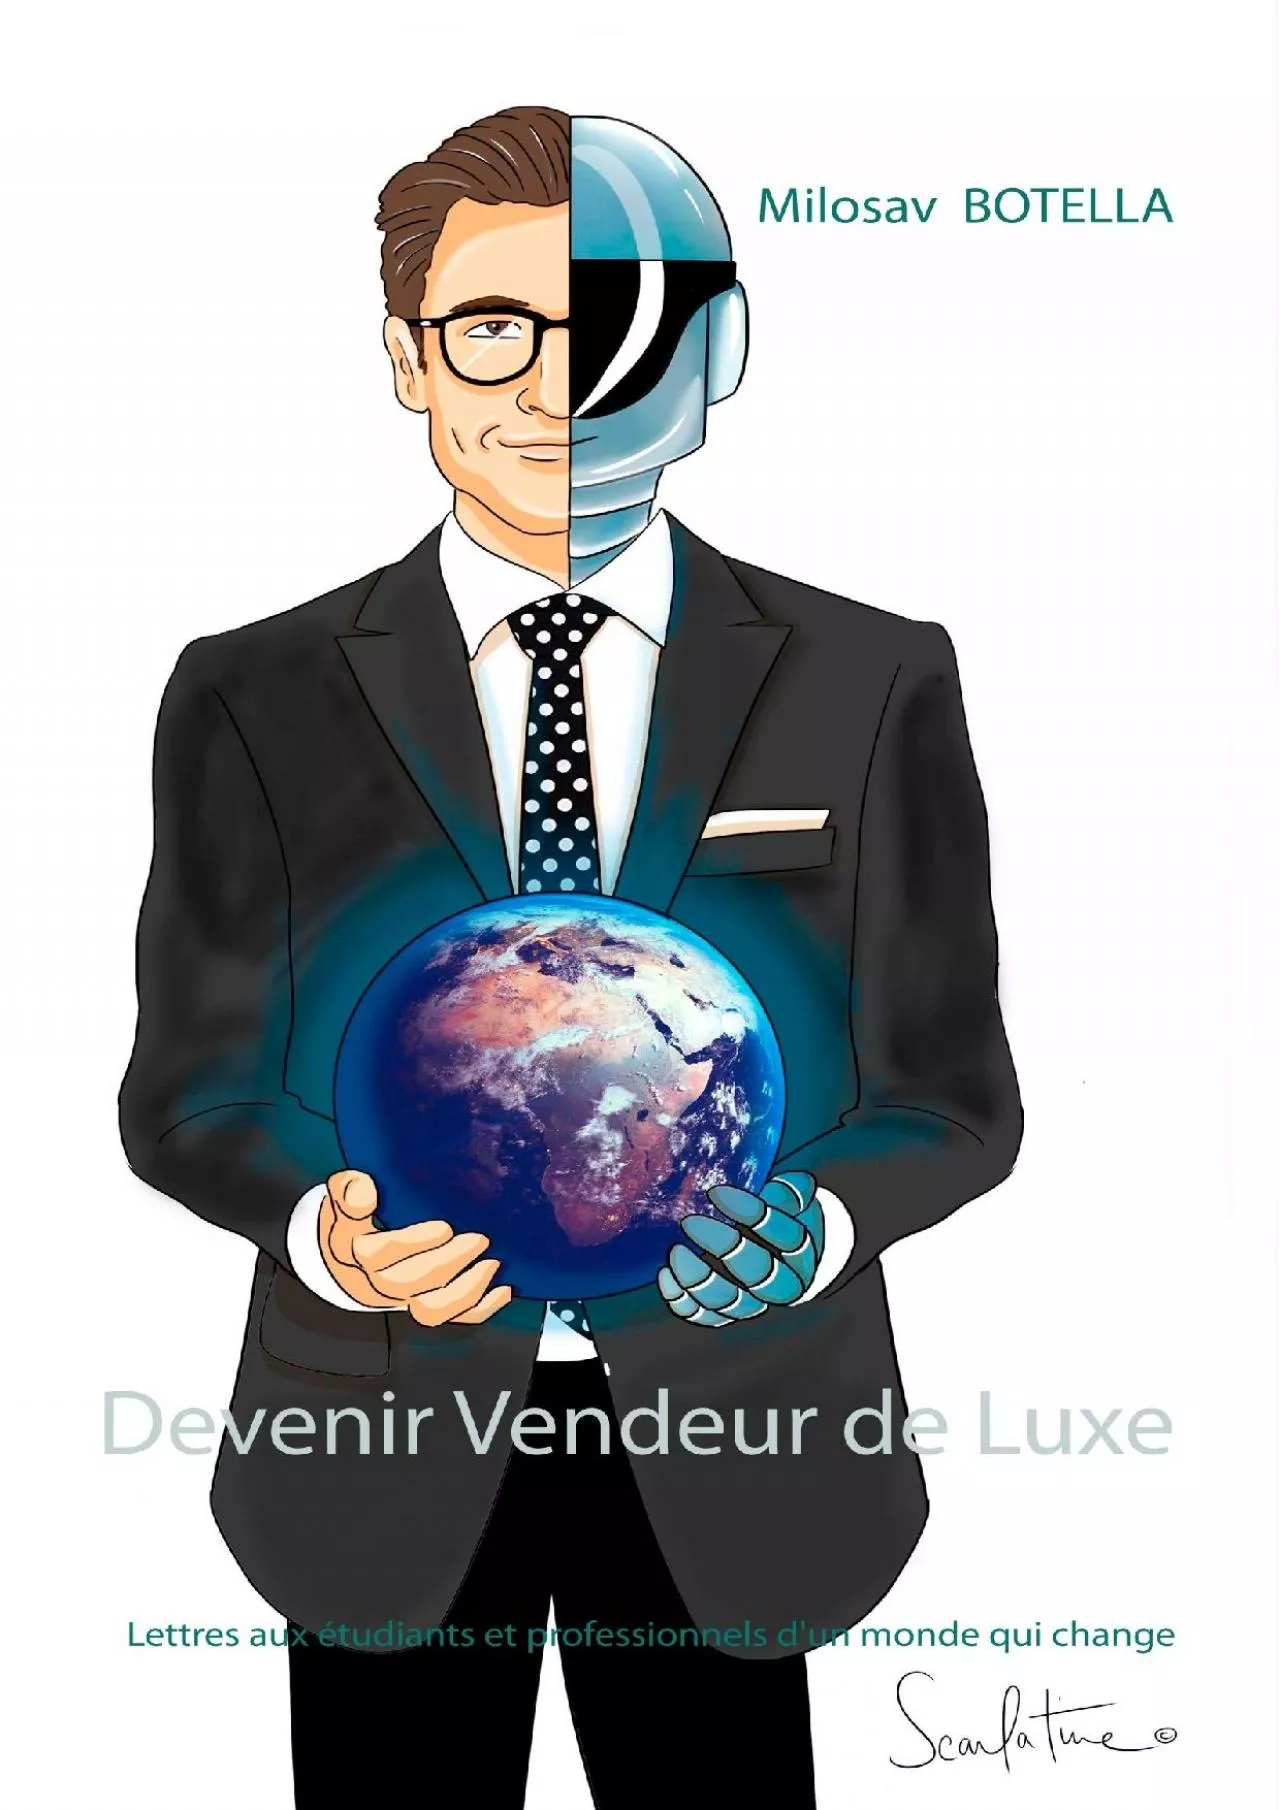 [EBOOK] Devenir Vendeur de Luxe: Lettres aux étudiants et professionnels d\'un monde